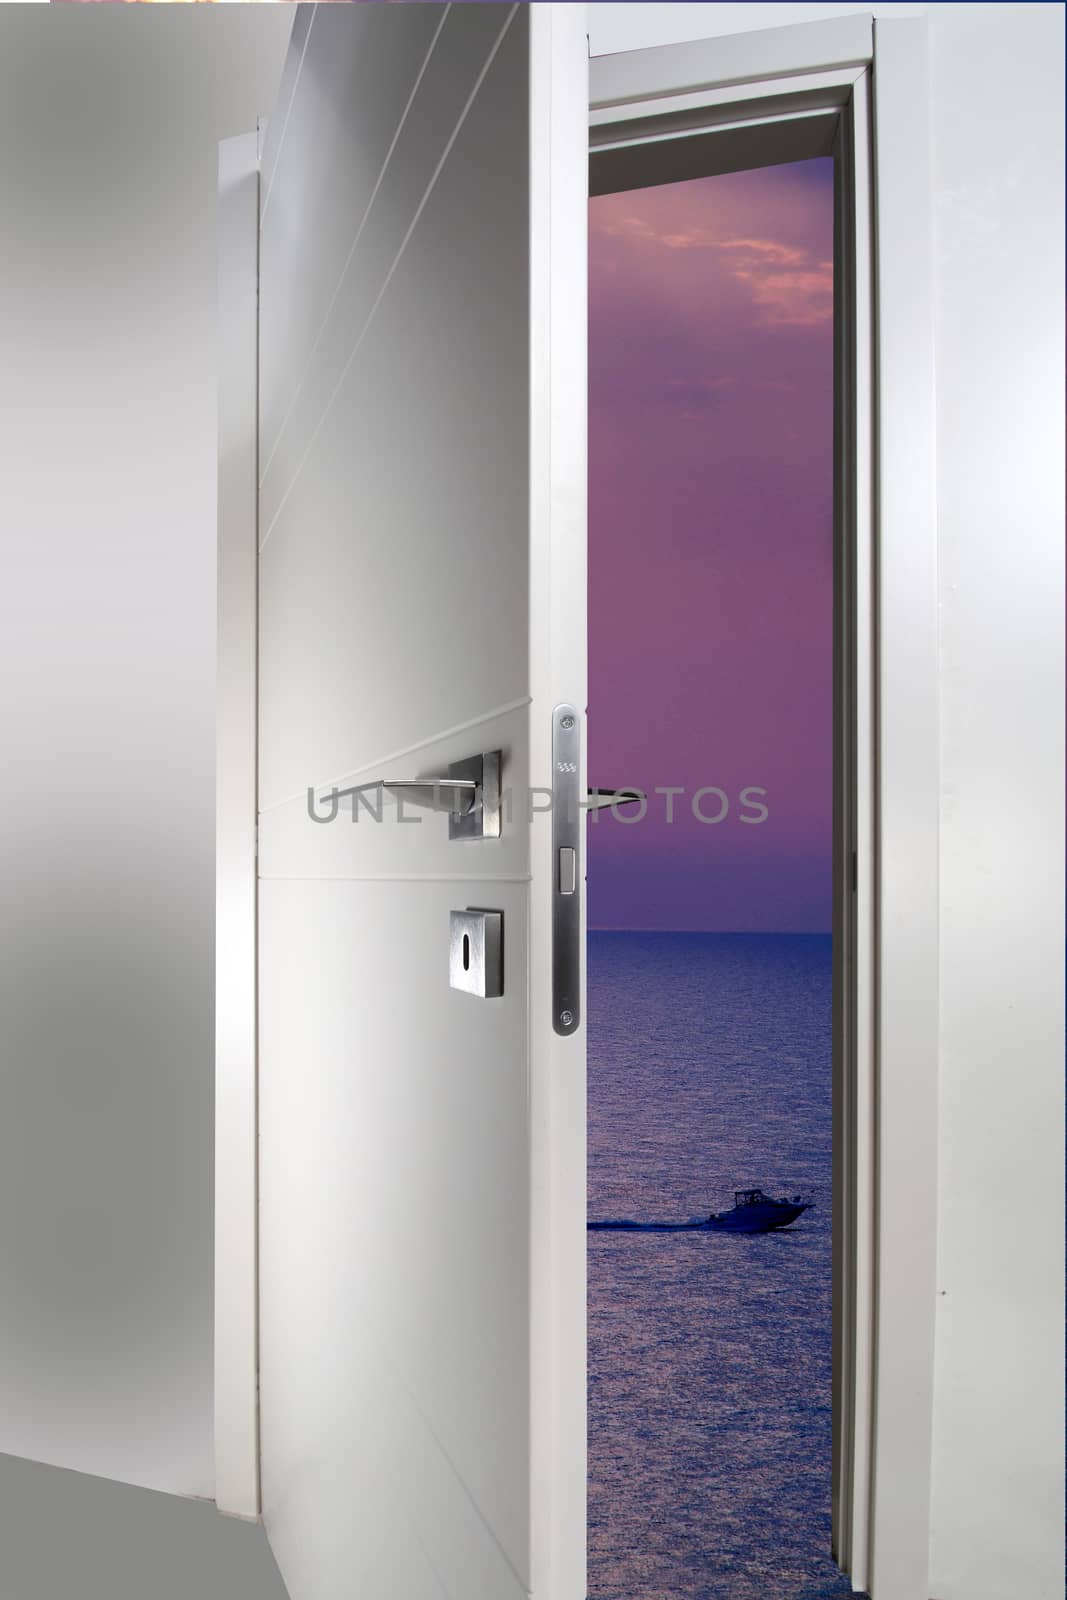 door open to the sea  by diecidodici